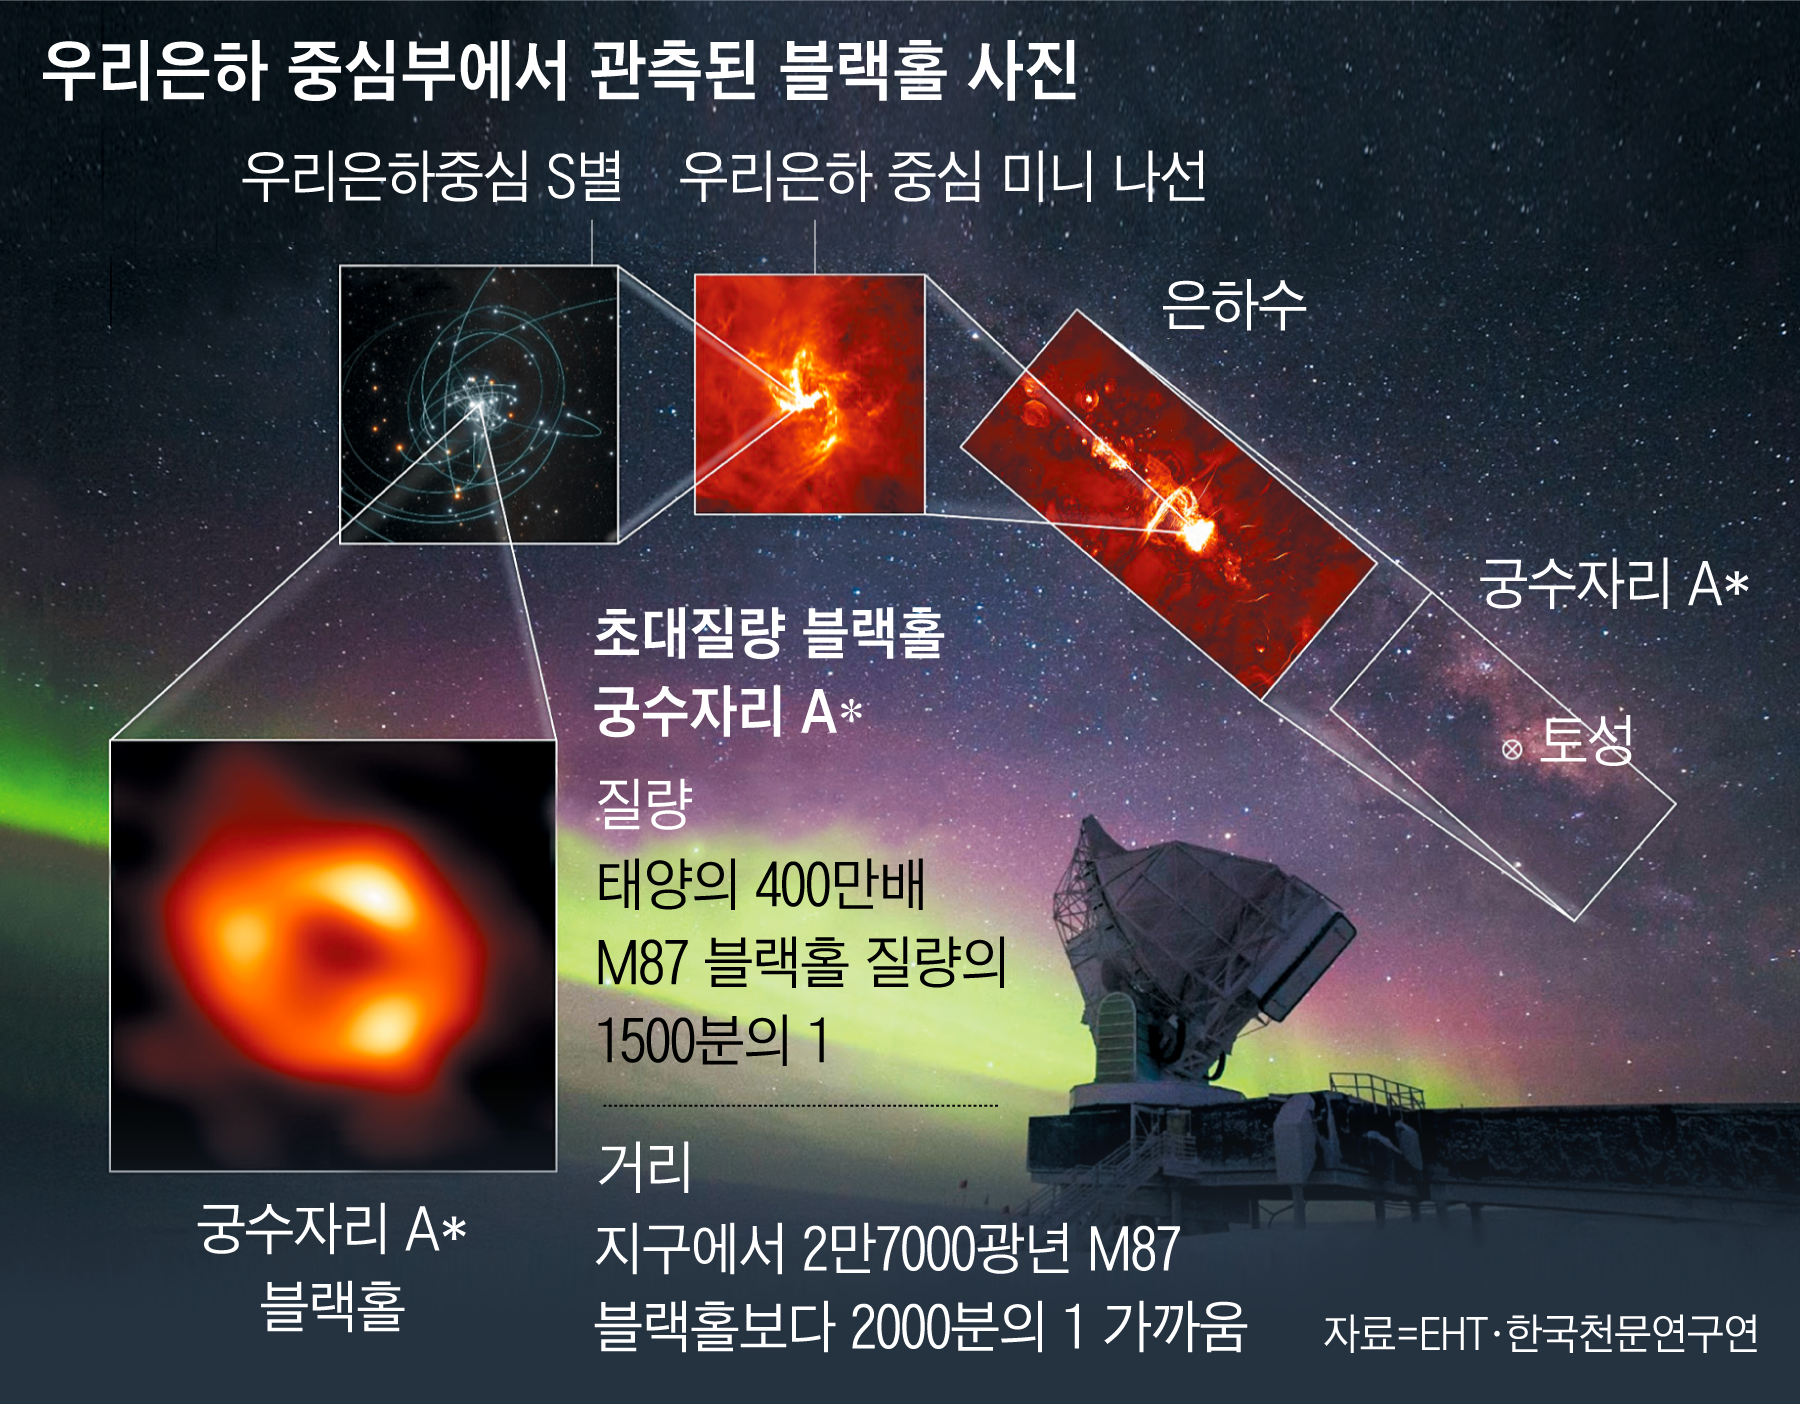 우리은하 중심부 블랙홀 첫 관측… “아인슈타인이 옳았다” - 조선일보